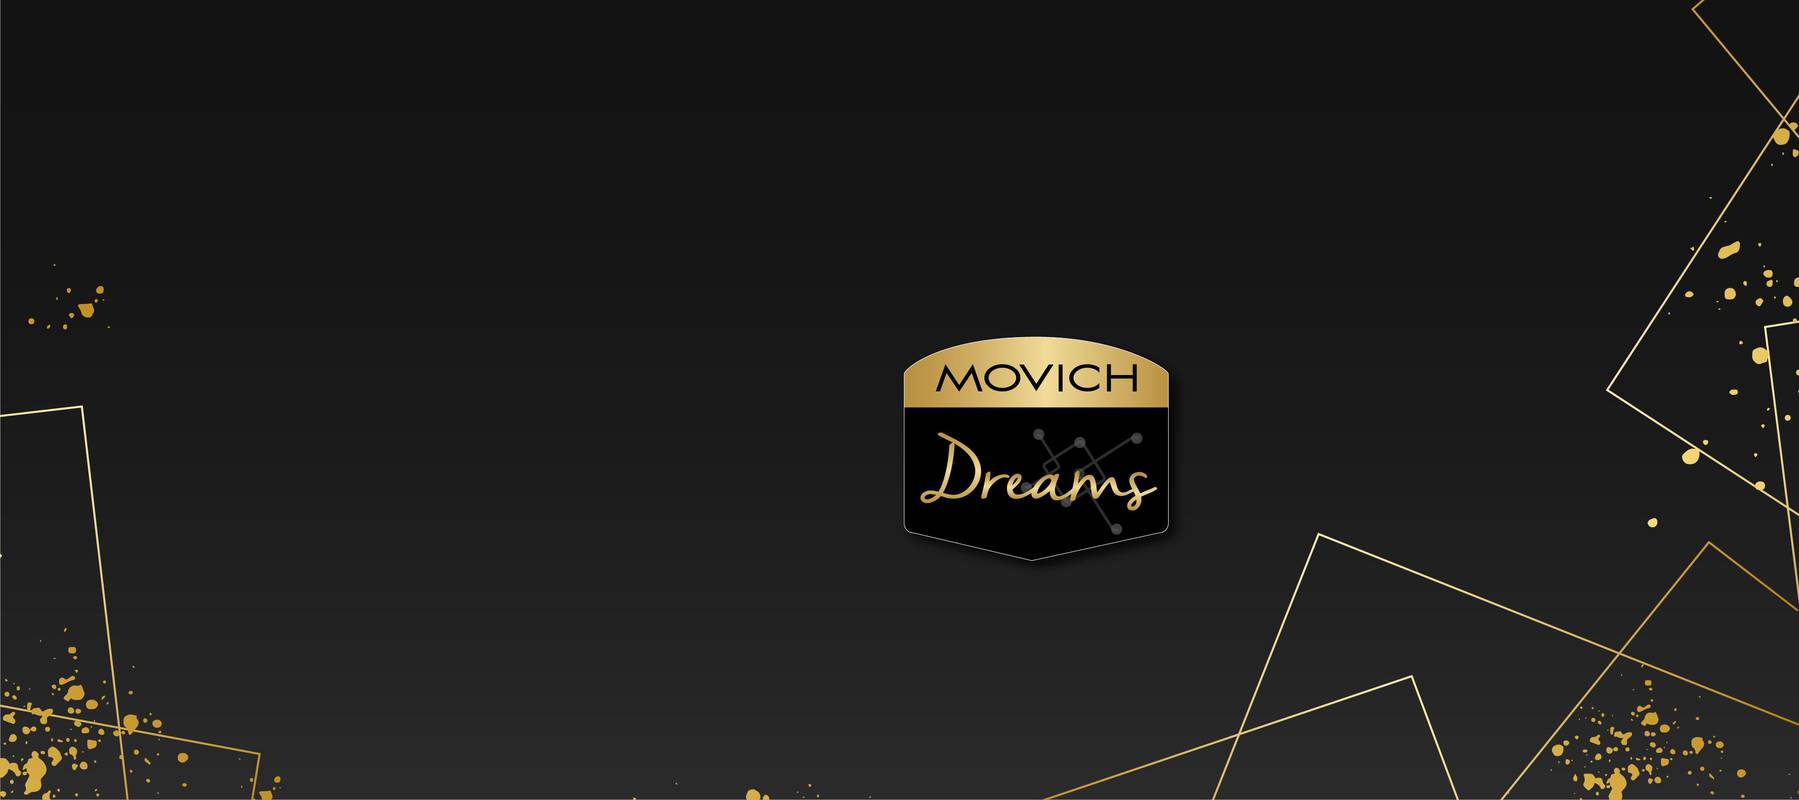 Regístrate y disfruta Movich Hotels